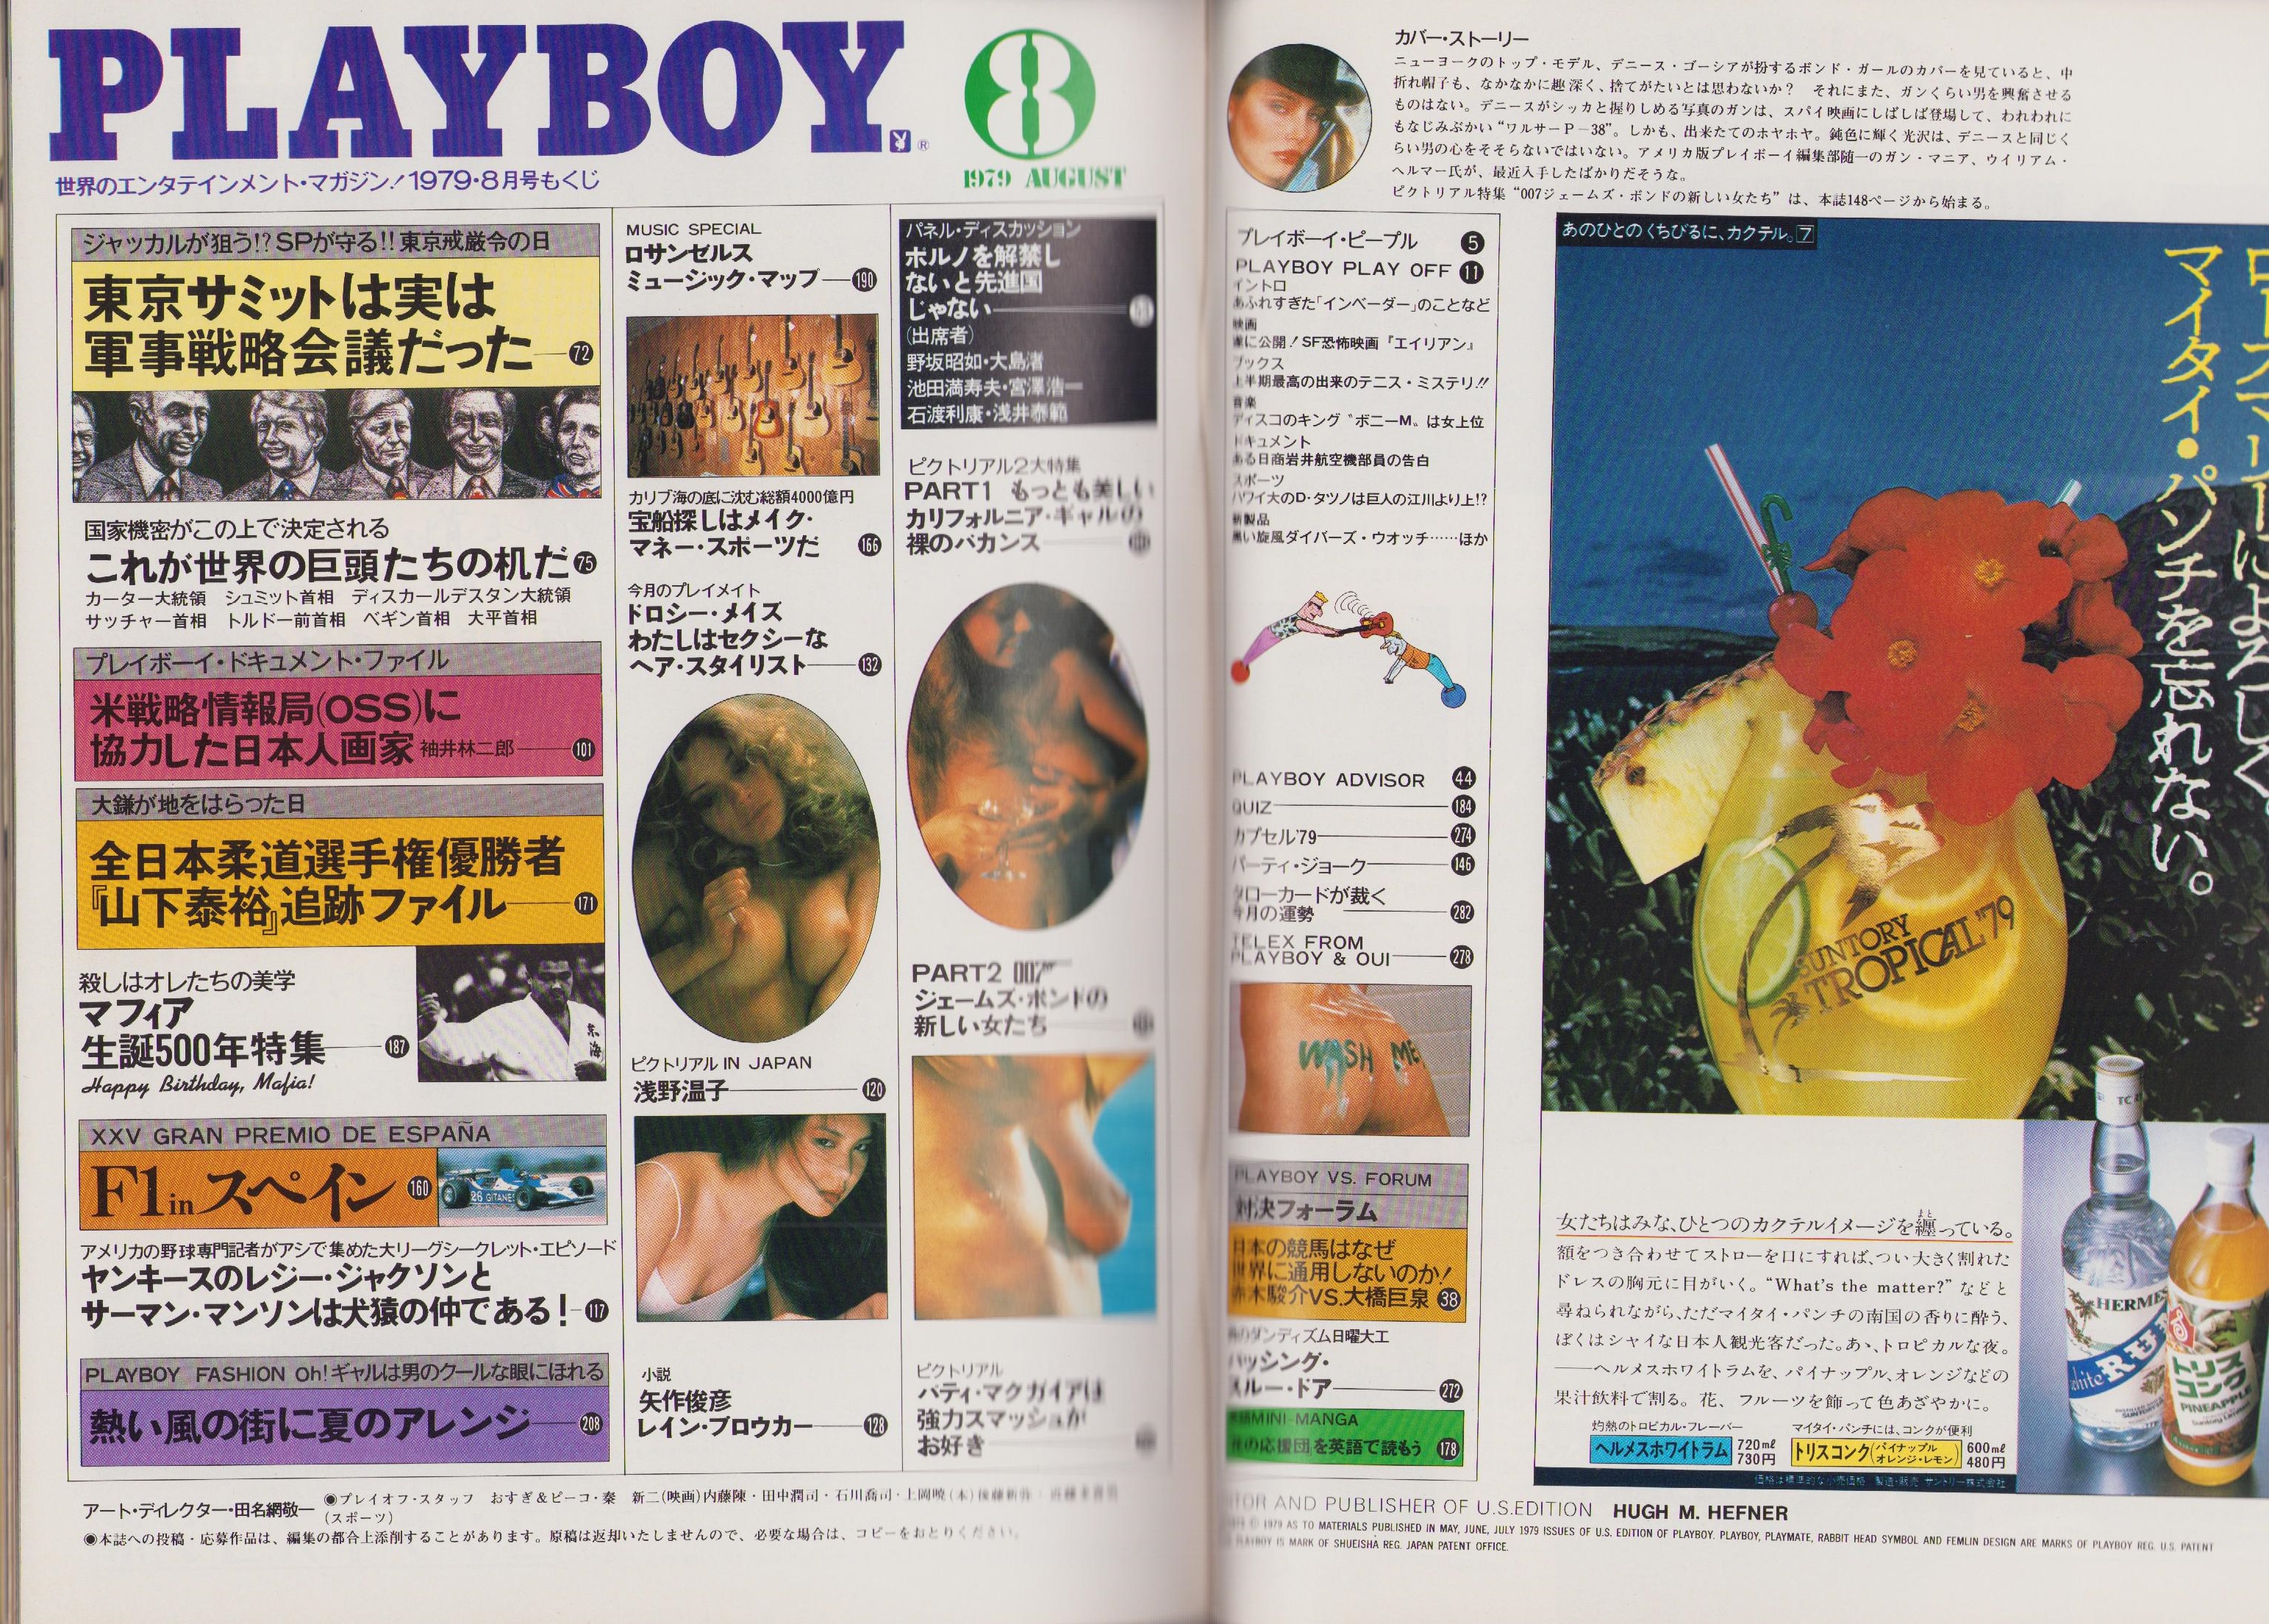 月刊プレイボーイ PLAYBOY 日本版 50号 -昭和54年8月-(〈パネル